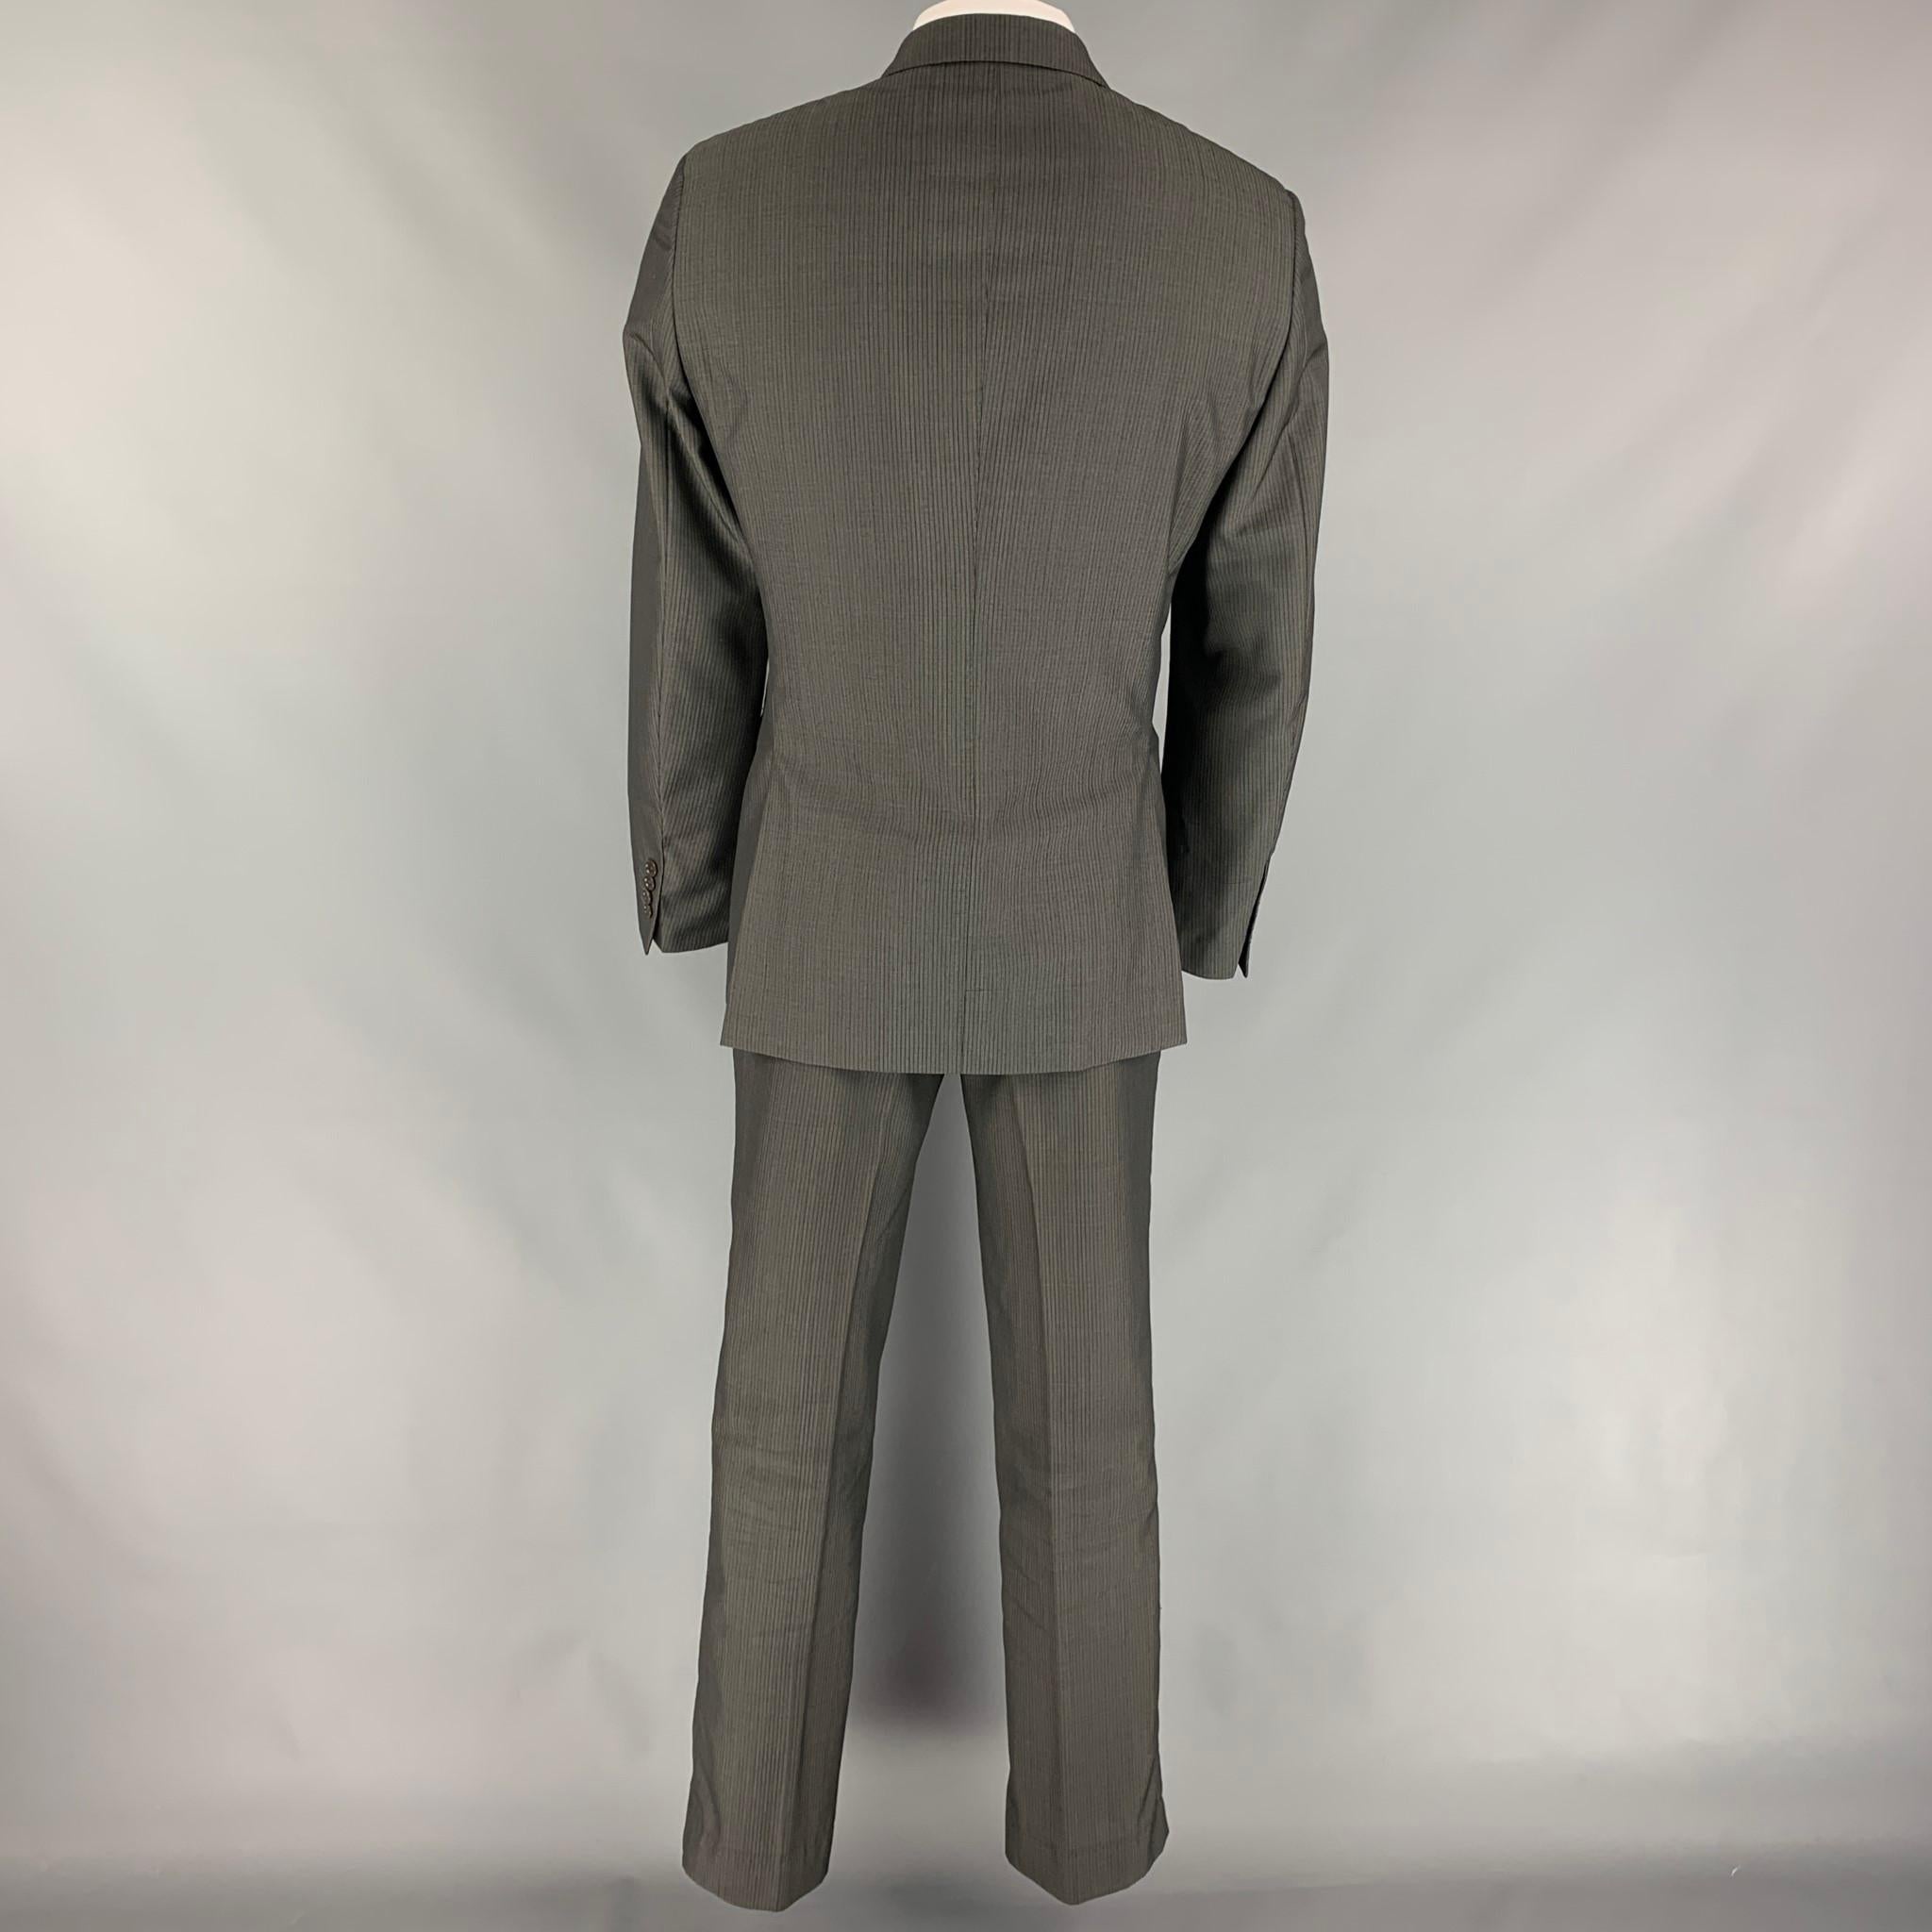 42 regular suit size